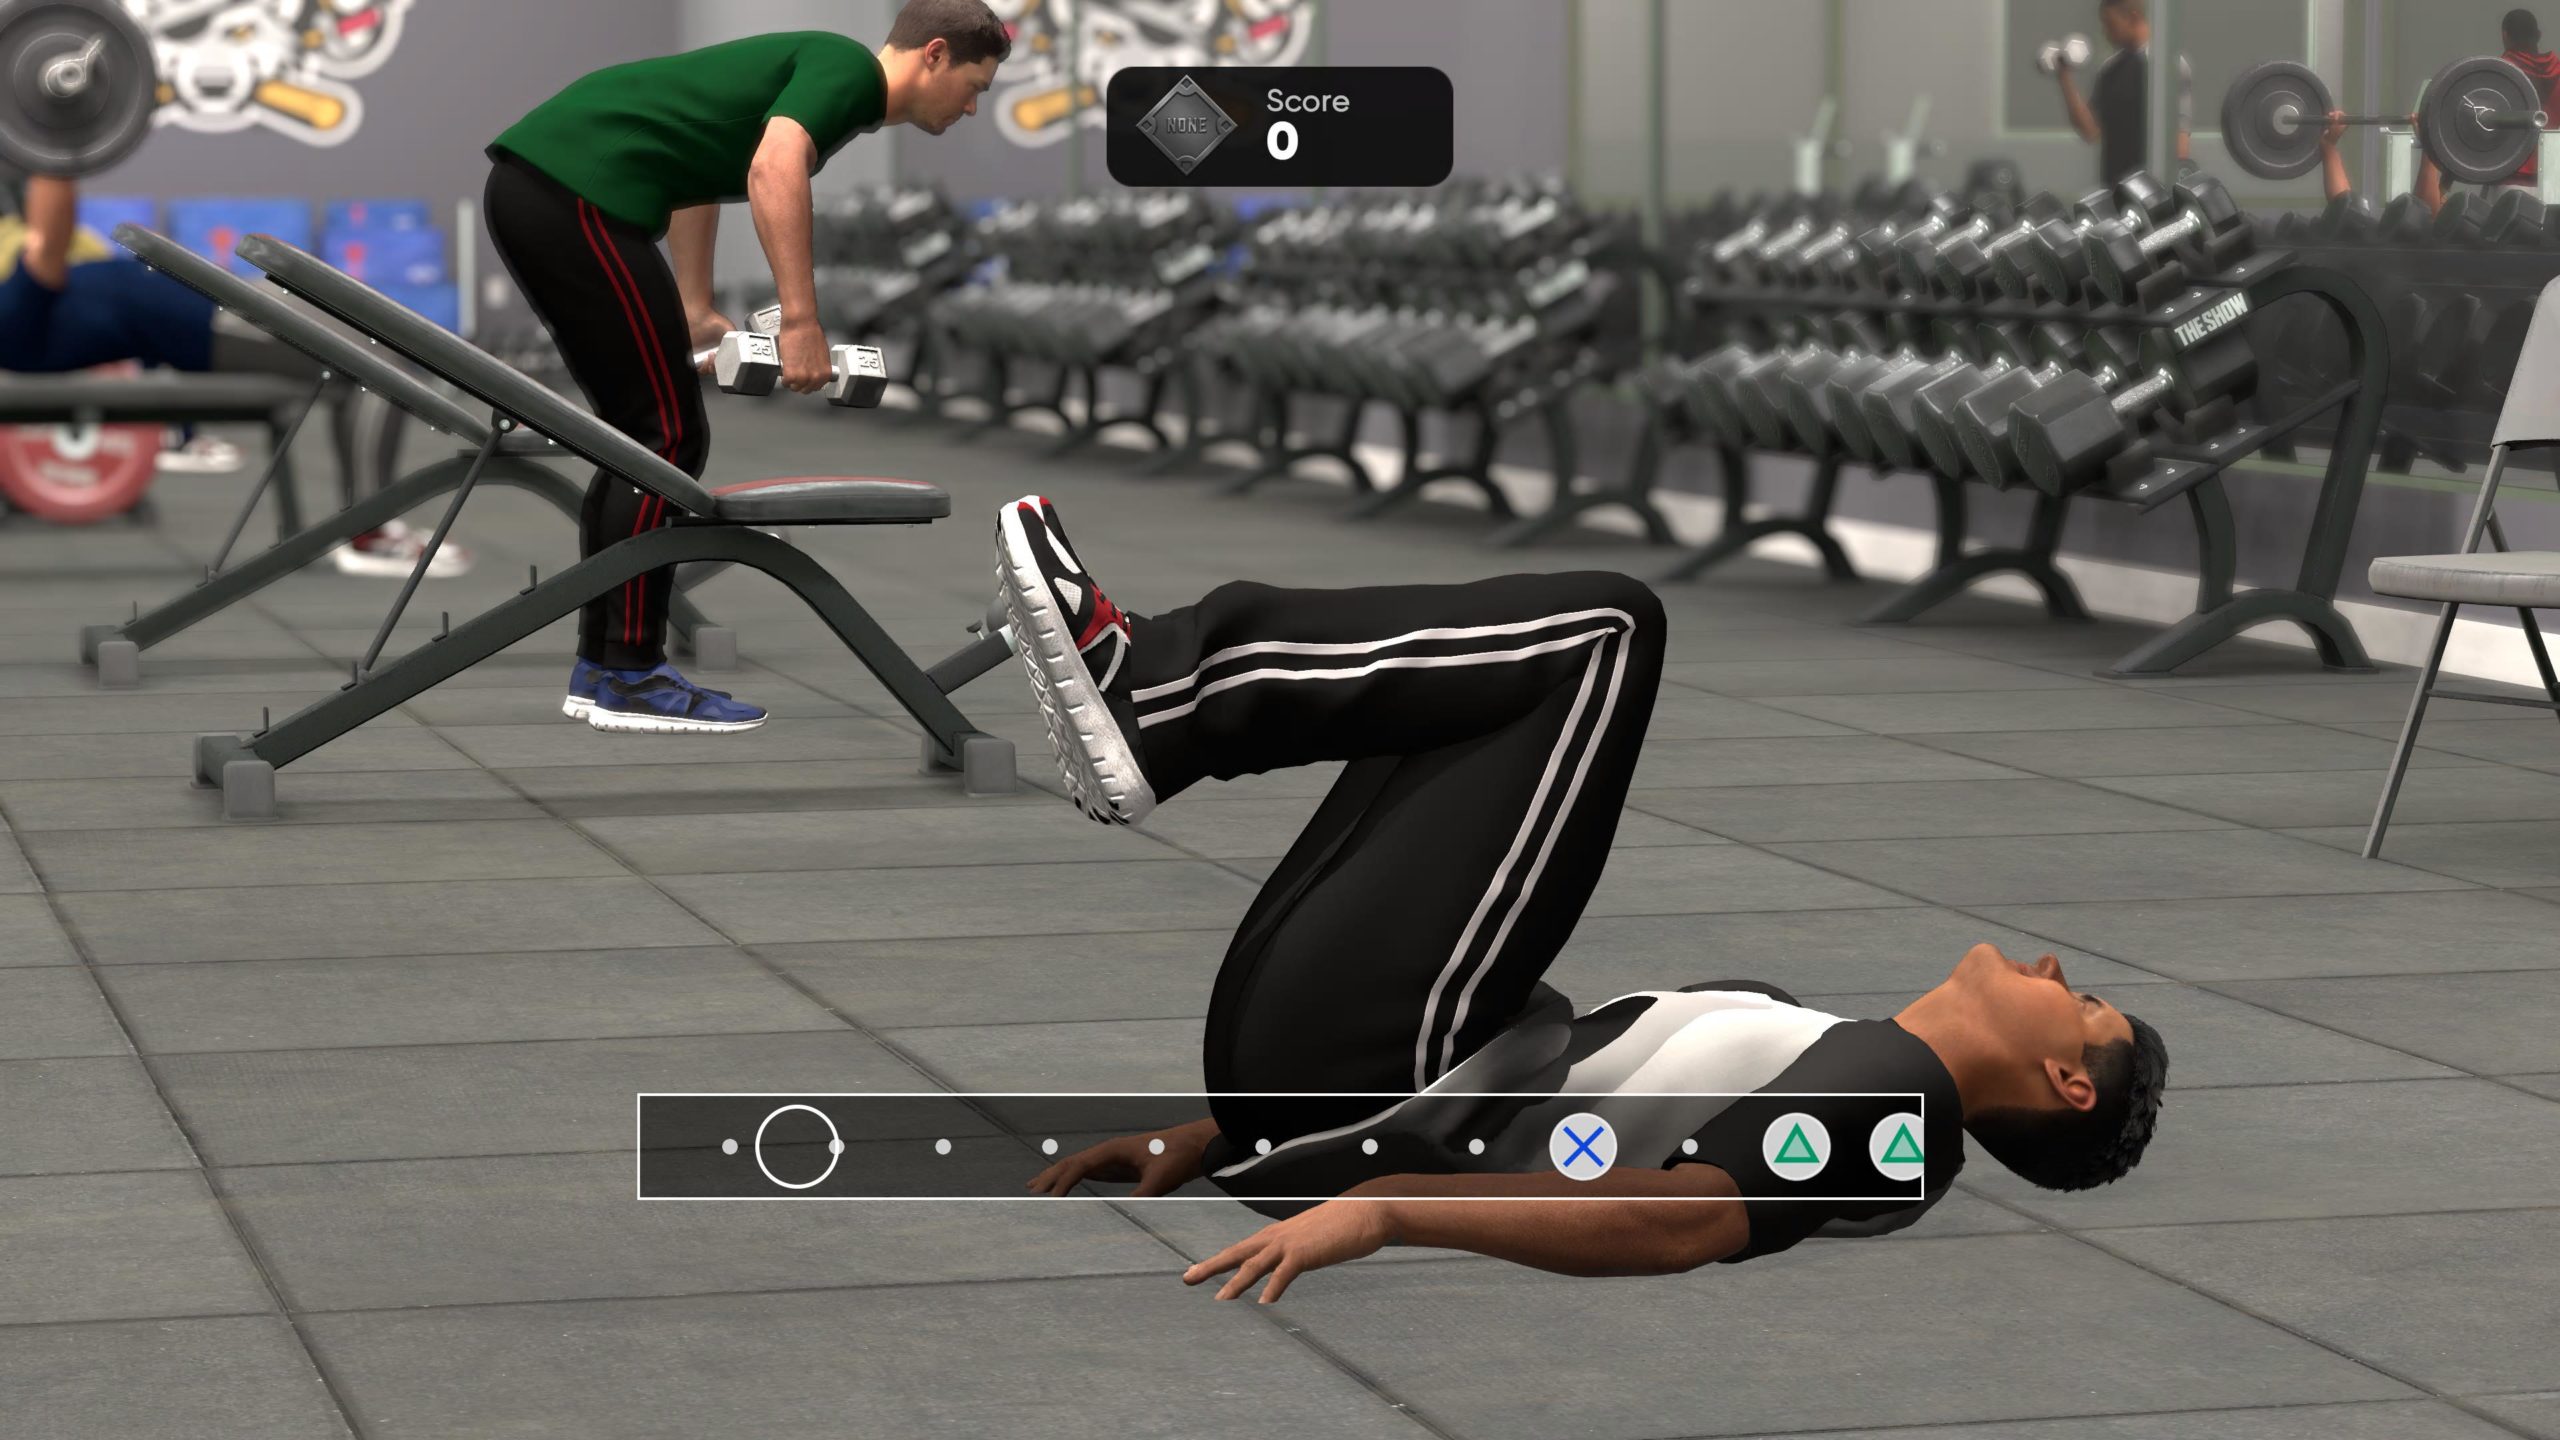 Des mini jeux simulent des sessions d'entraînement au gym, ce qui ajoute de la variété